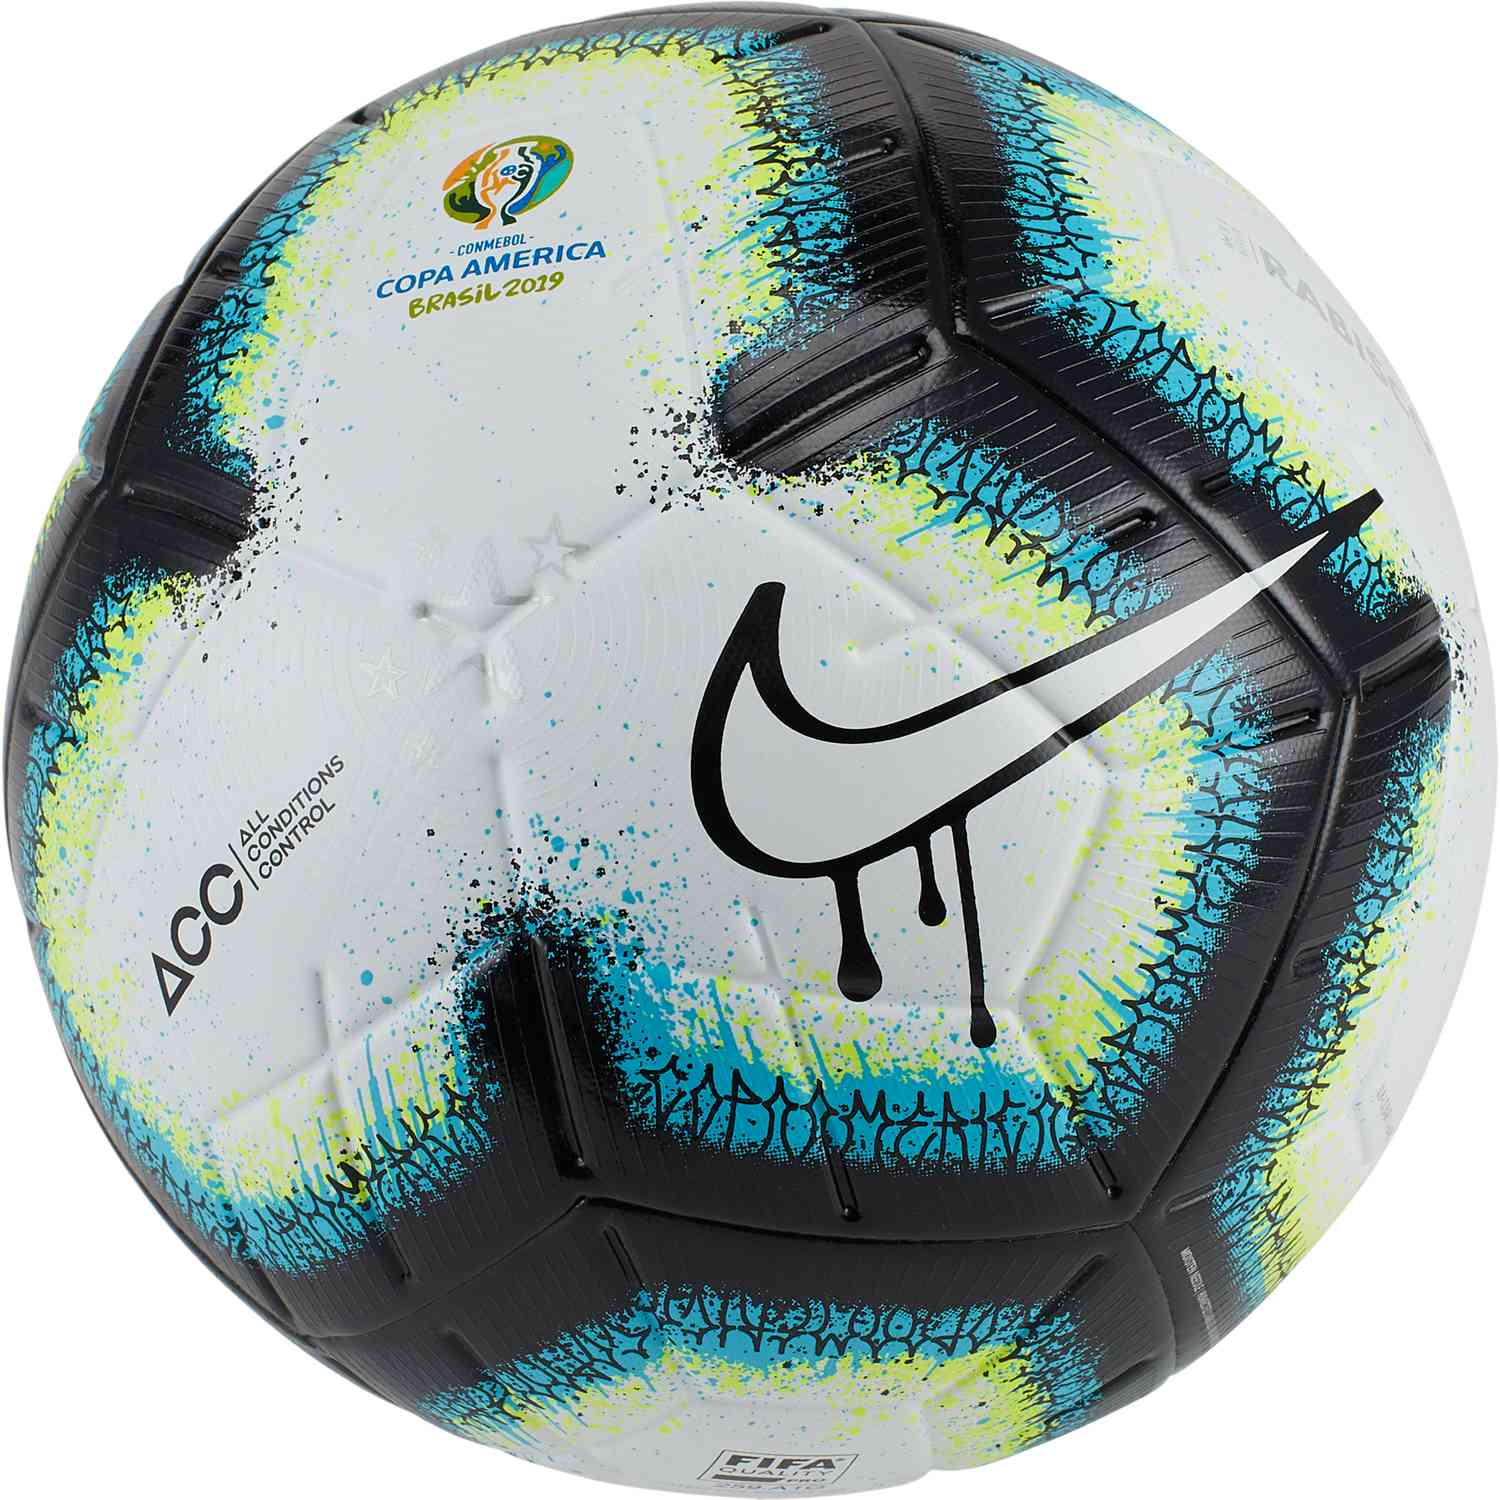 Nike Rabisco Copa America Ball Released - Footy Headlines